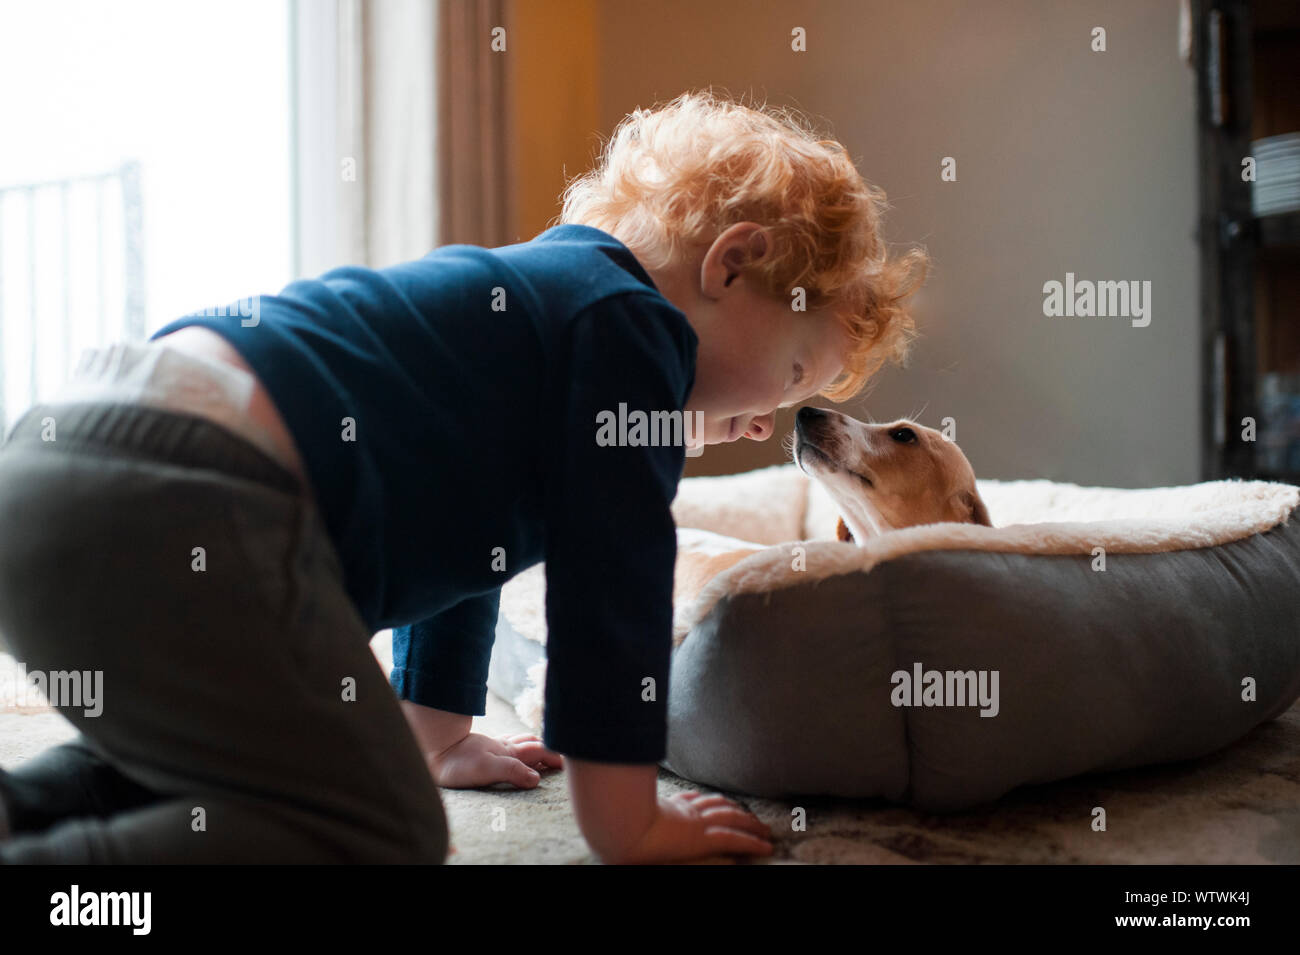 Bébé garçon de près de nouvelles dachshund puppy à la maison de la Grand-maman Banque D'Images